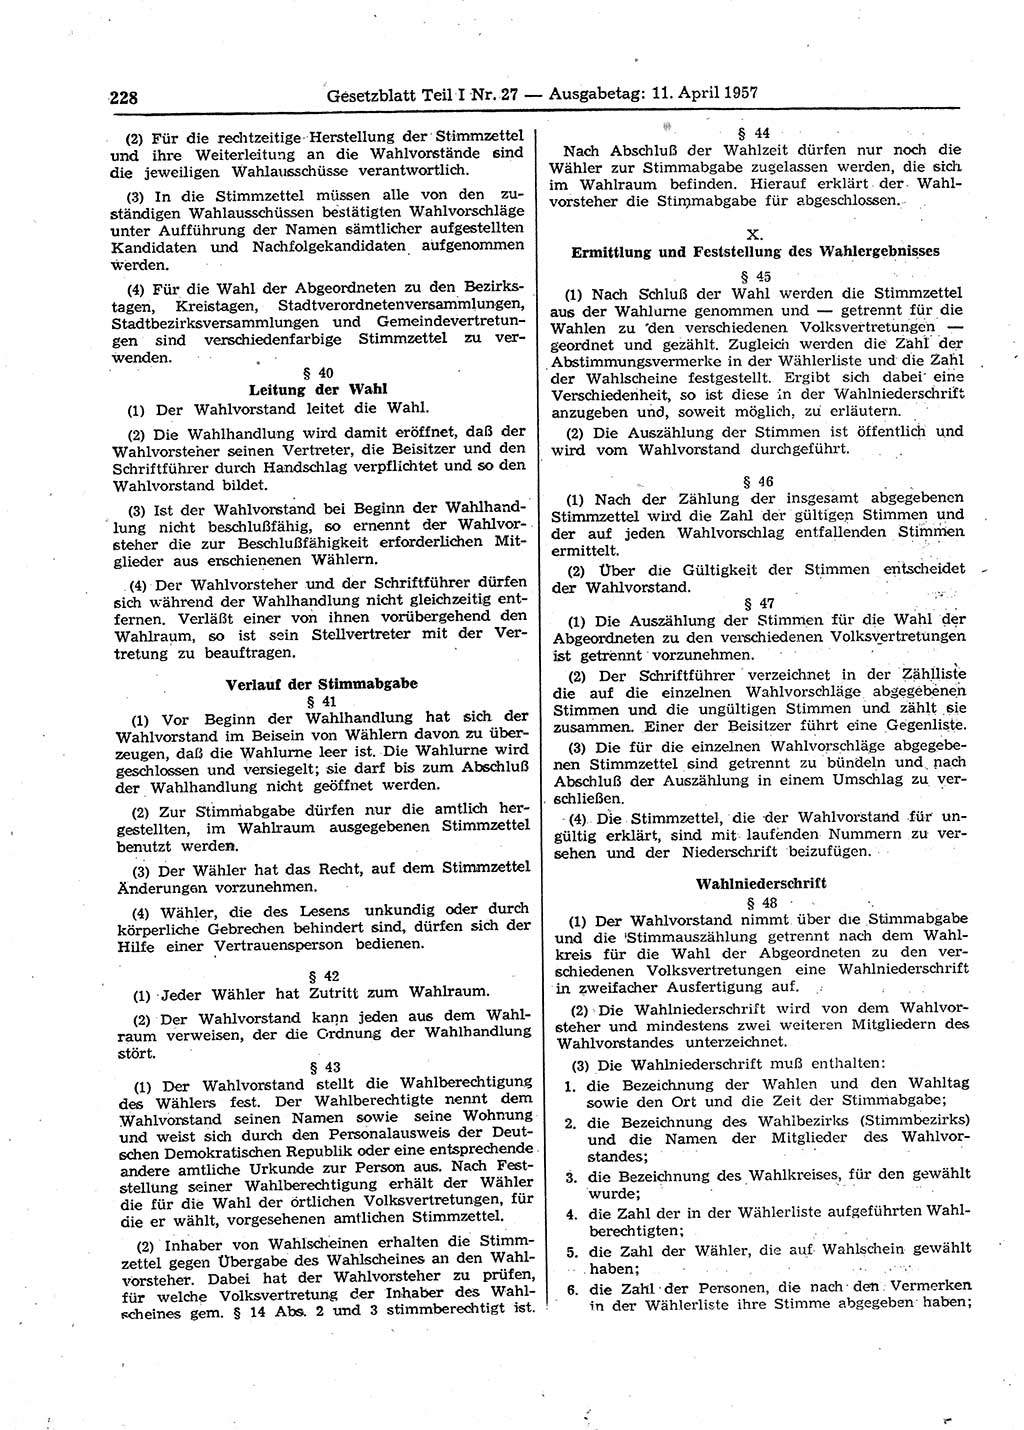 Gesetzblatt (GBl.) der Deutschen Demokratischen Republik (DDR) Teil Ⅰ 1957, Seite 228 (GBl. DDR Ⅰ 1957, S. 228)